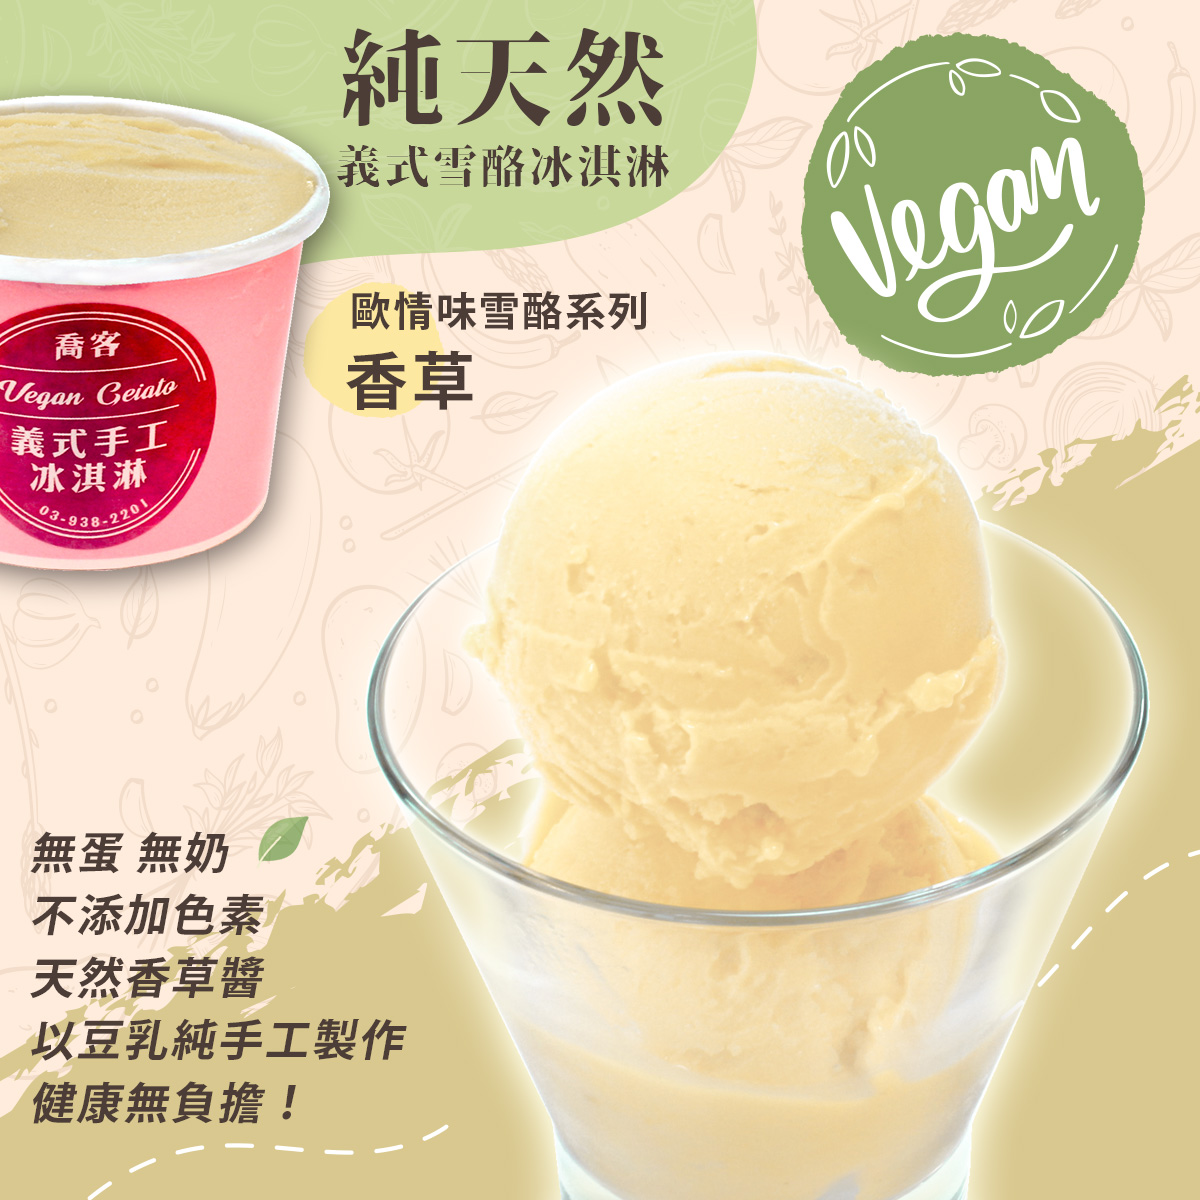 【喬客】歐情味雪酪系列-香草 冰淇淋